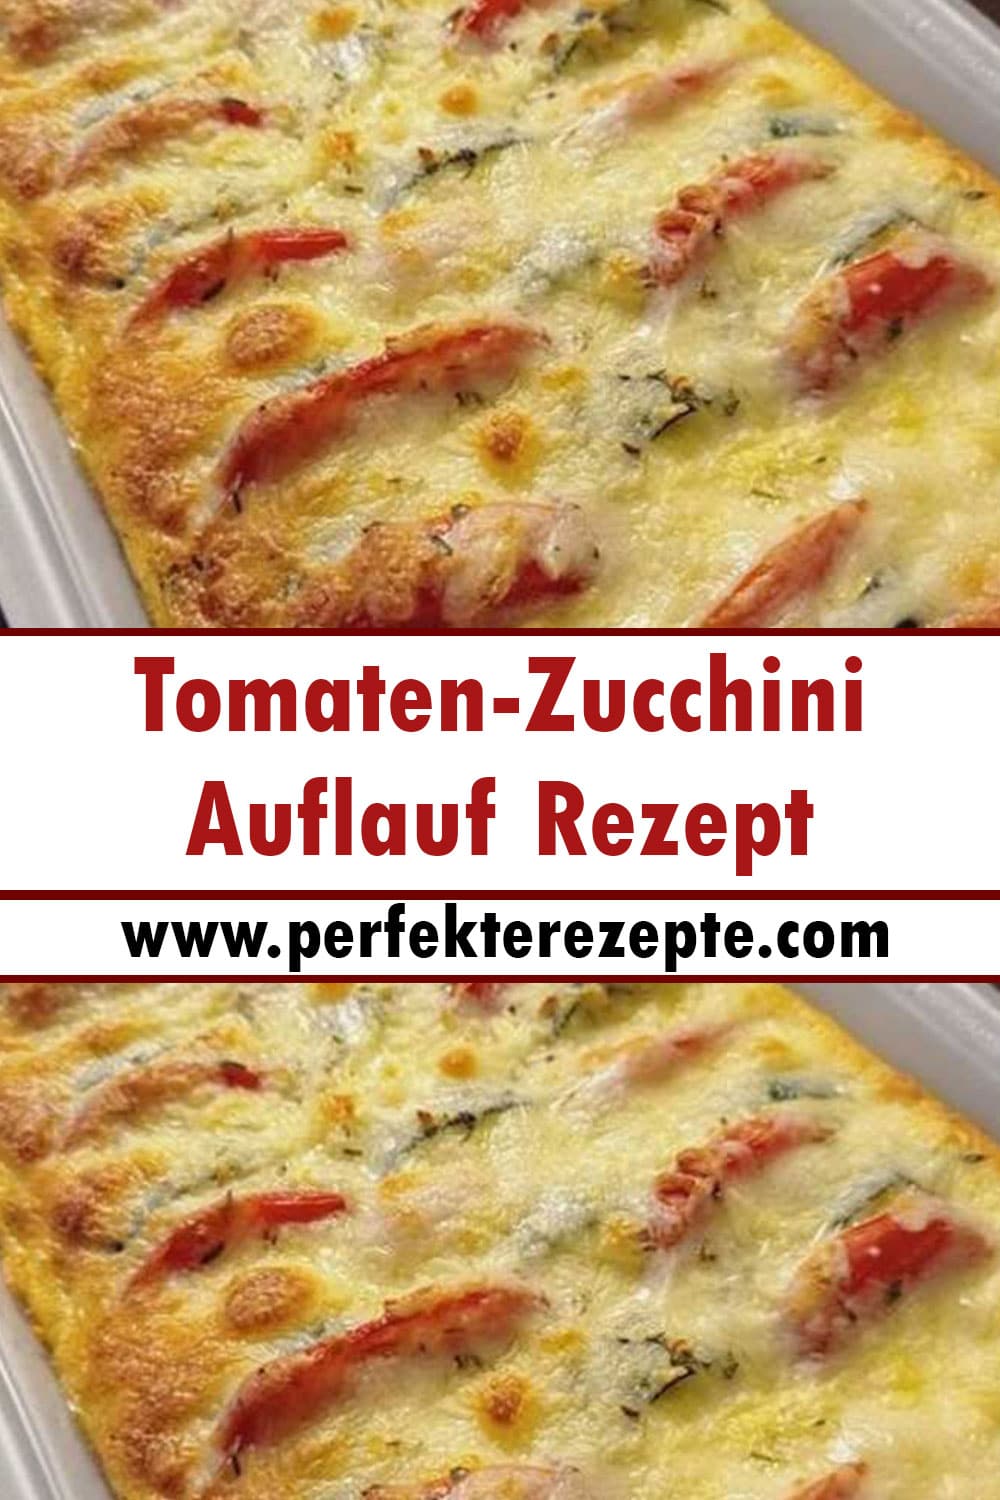 Tomaten-Zucchini-Auflauf Rezept